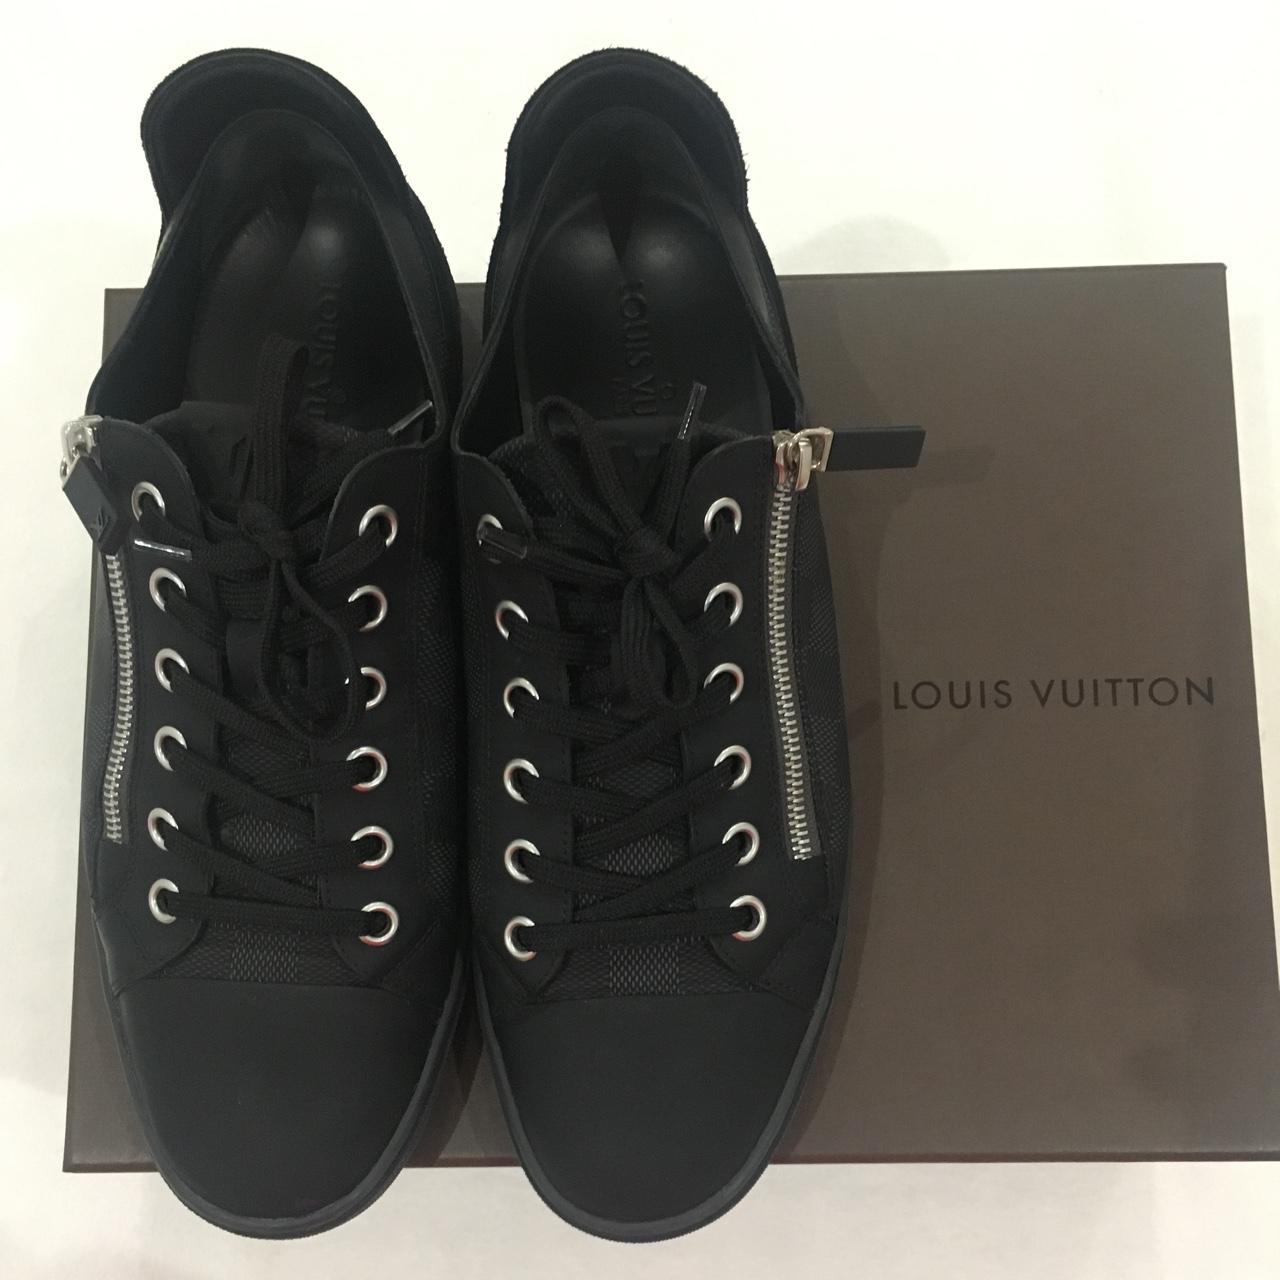 Louis vuitton socks sneakers for sale size 37.5 true - Depop